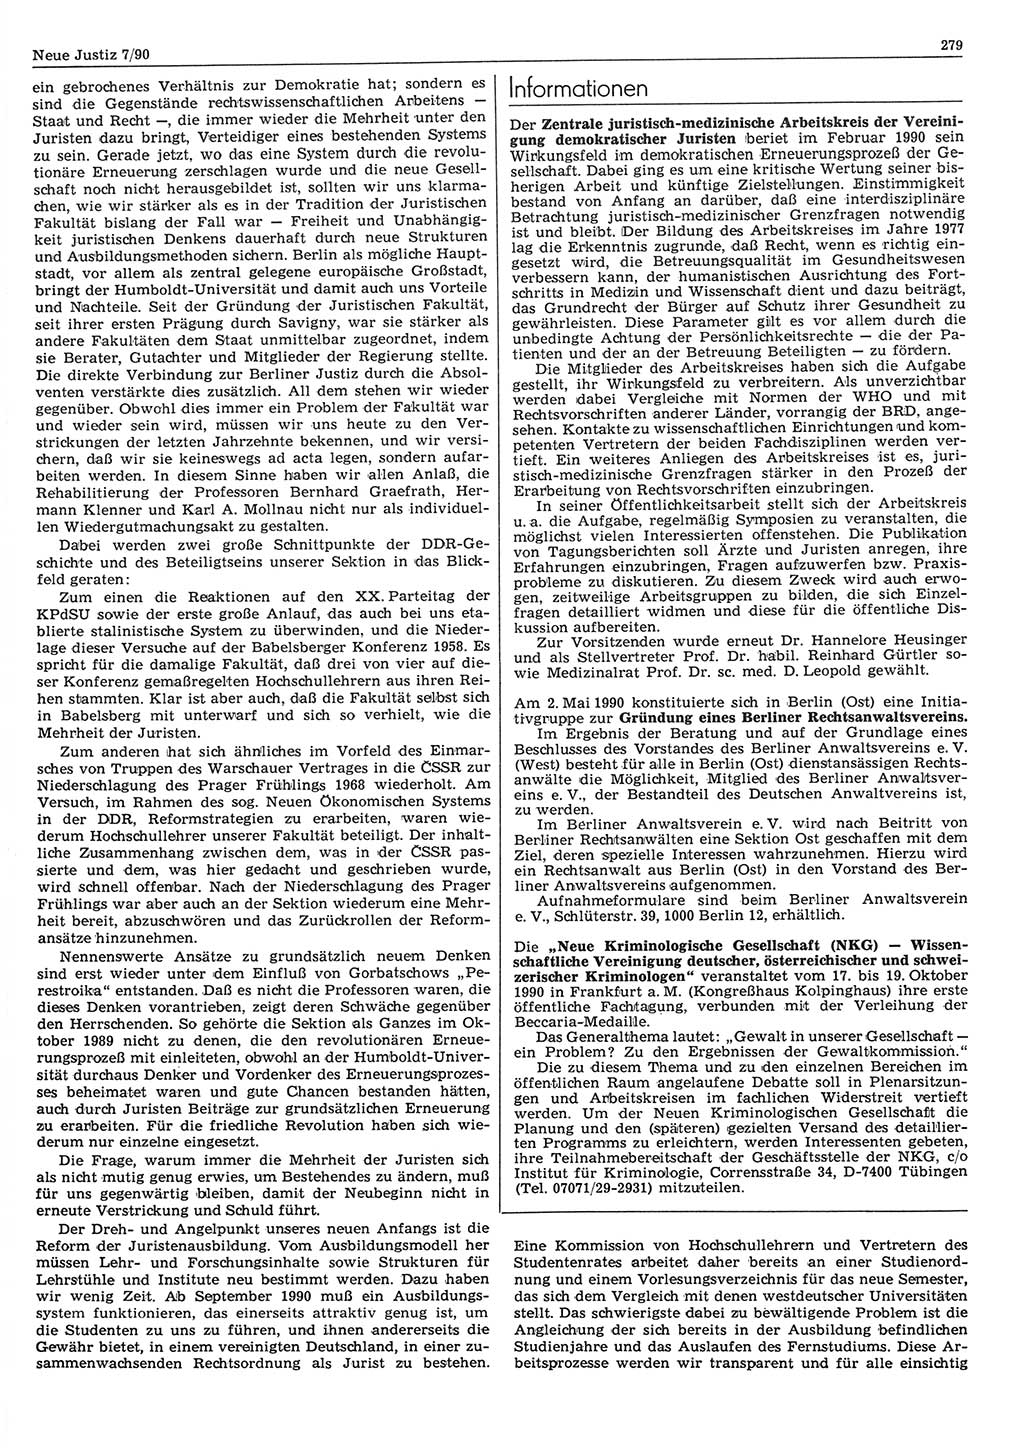 Neue Justiz (NJ), Zeitschrift für Rechtsetzung und Rechtsanwendung [Deutsche Demokratische Republik (DDR)], 44. Jahrgang 1990, Seite 279 (NJ DDR 1990, S. 279)